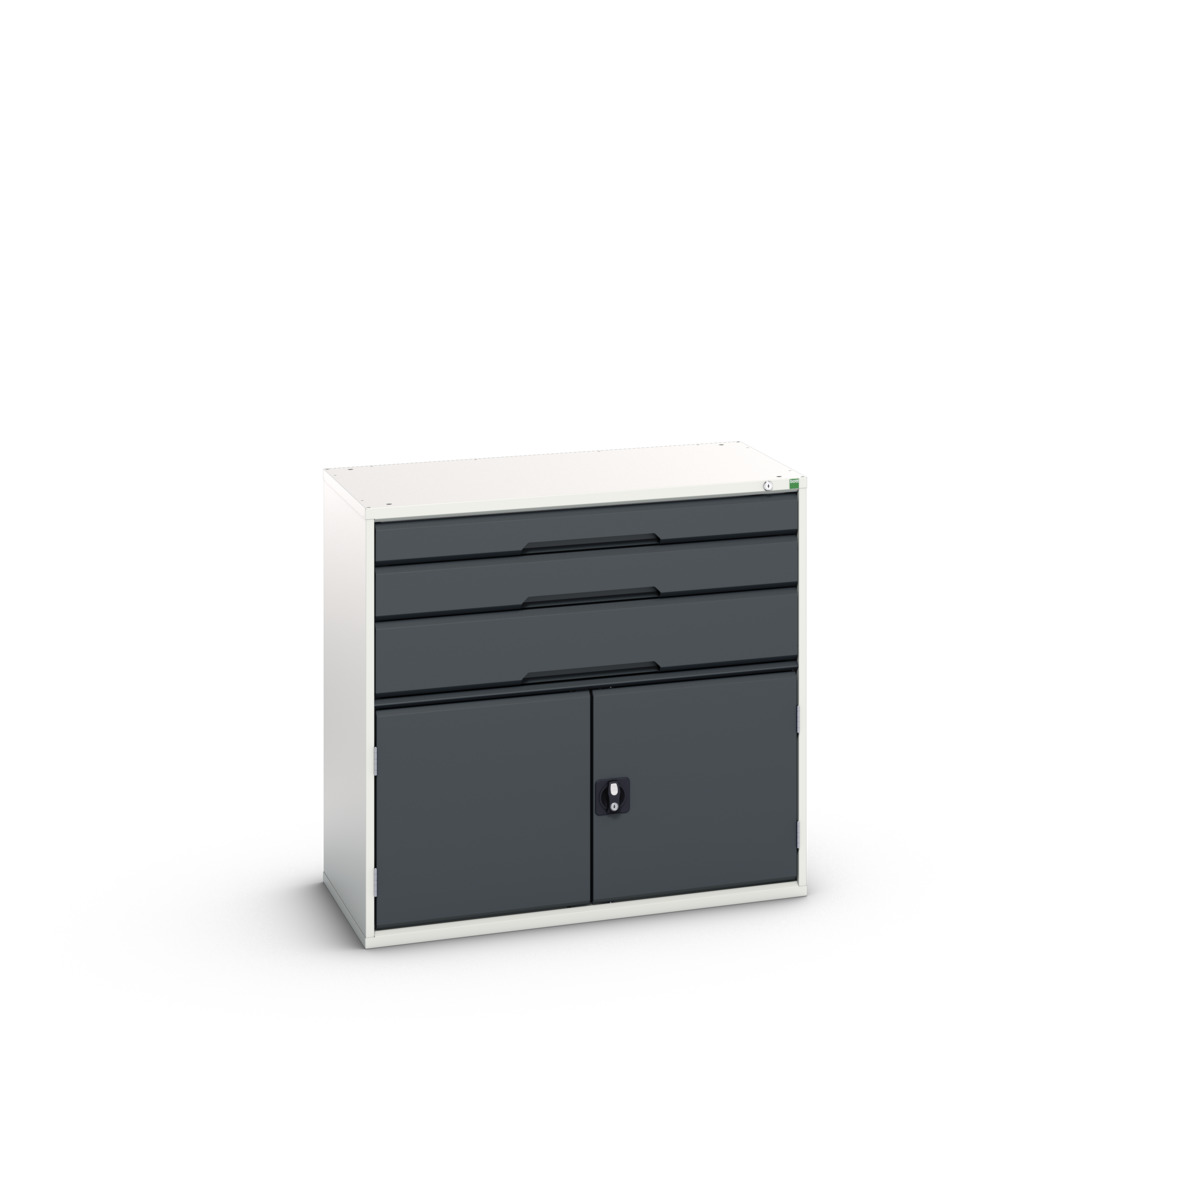 16925261. - verso drawer-door cabinet